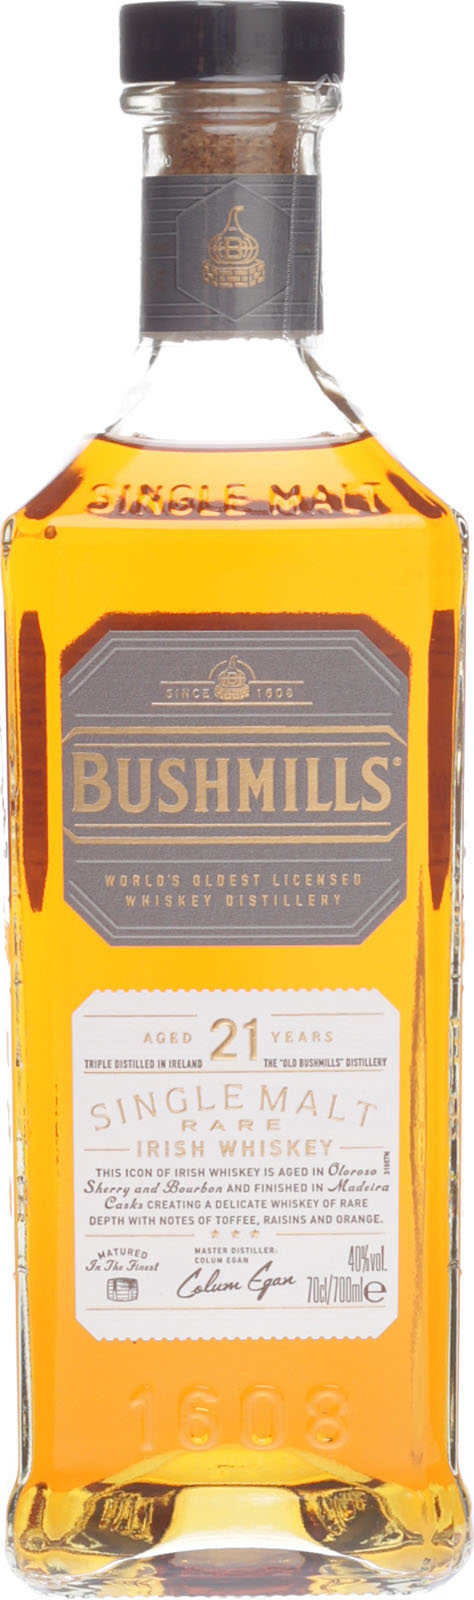 Bushmills im Shop Whisky Jahre 21 hier günstigen Irish